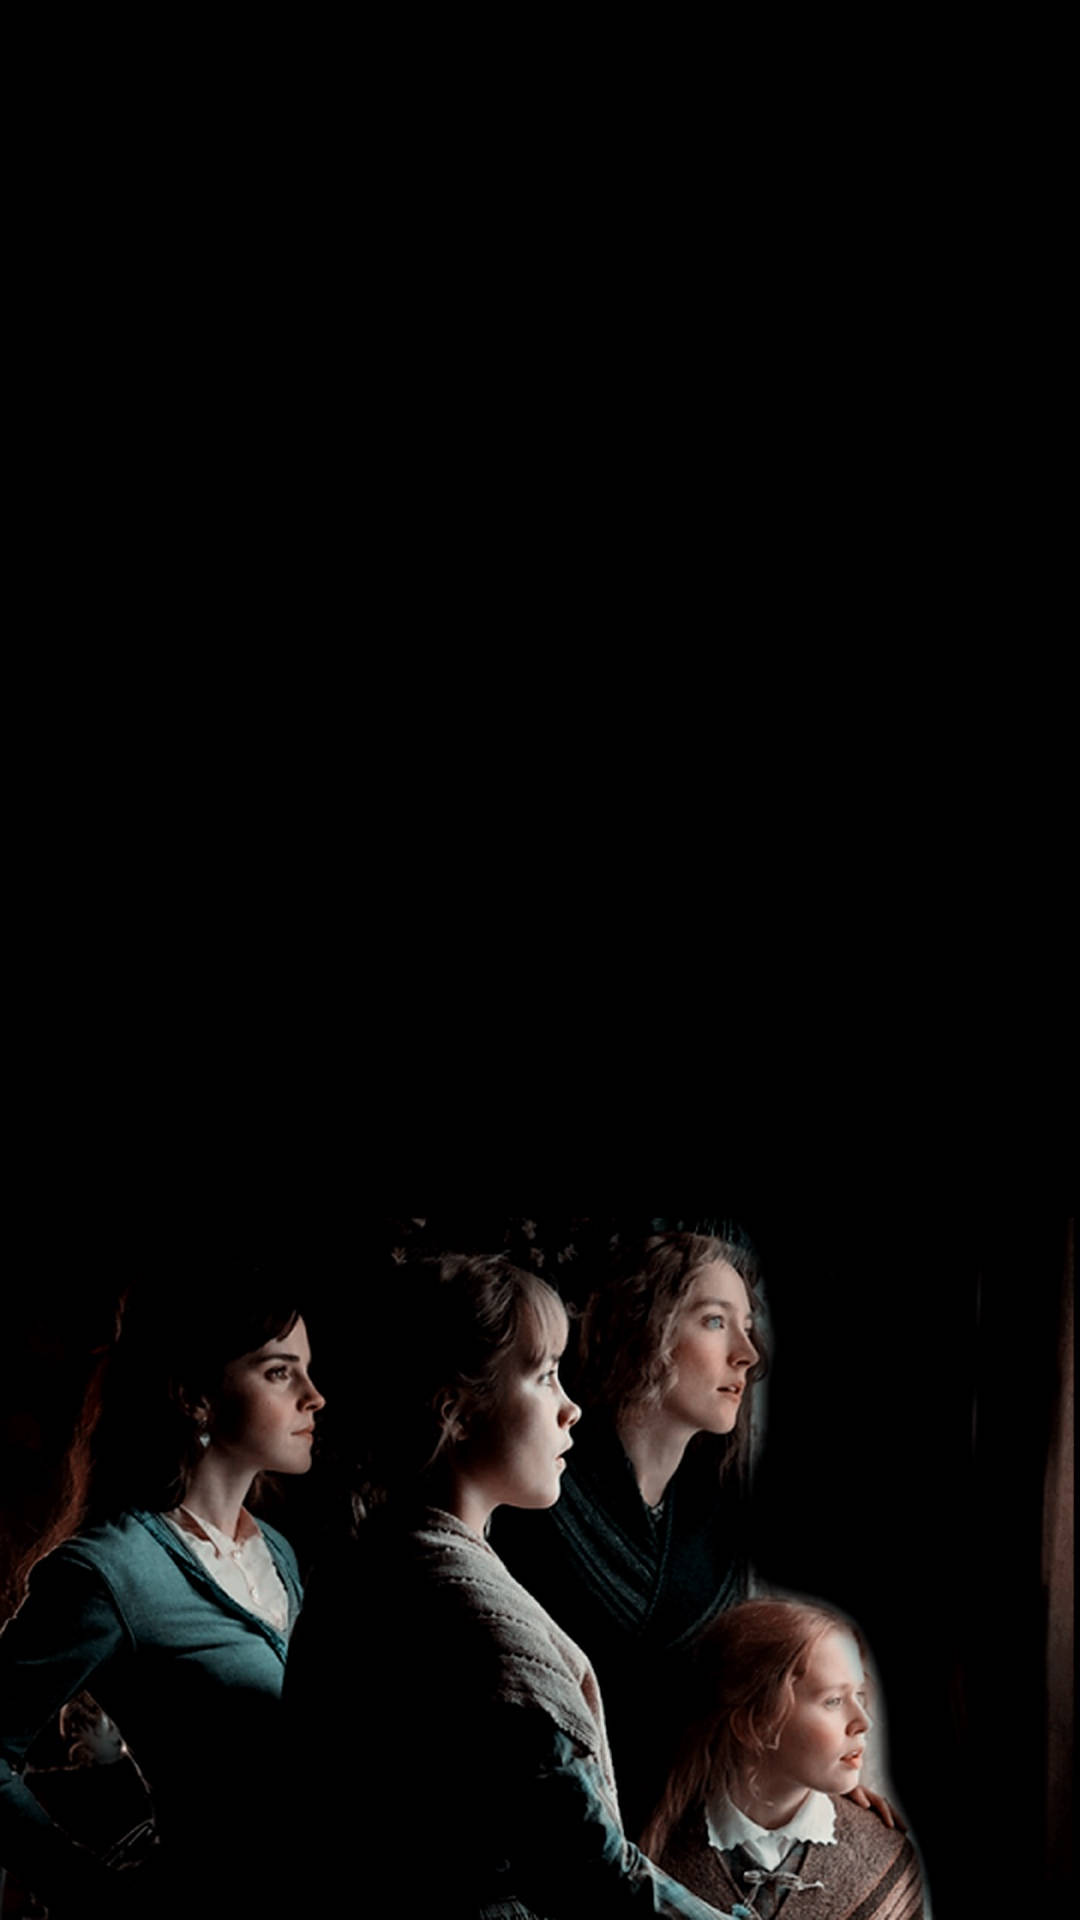 Saoirse Ronan In Little Women Wallpapers